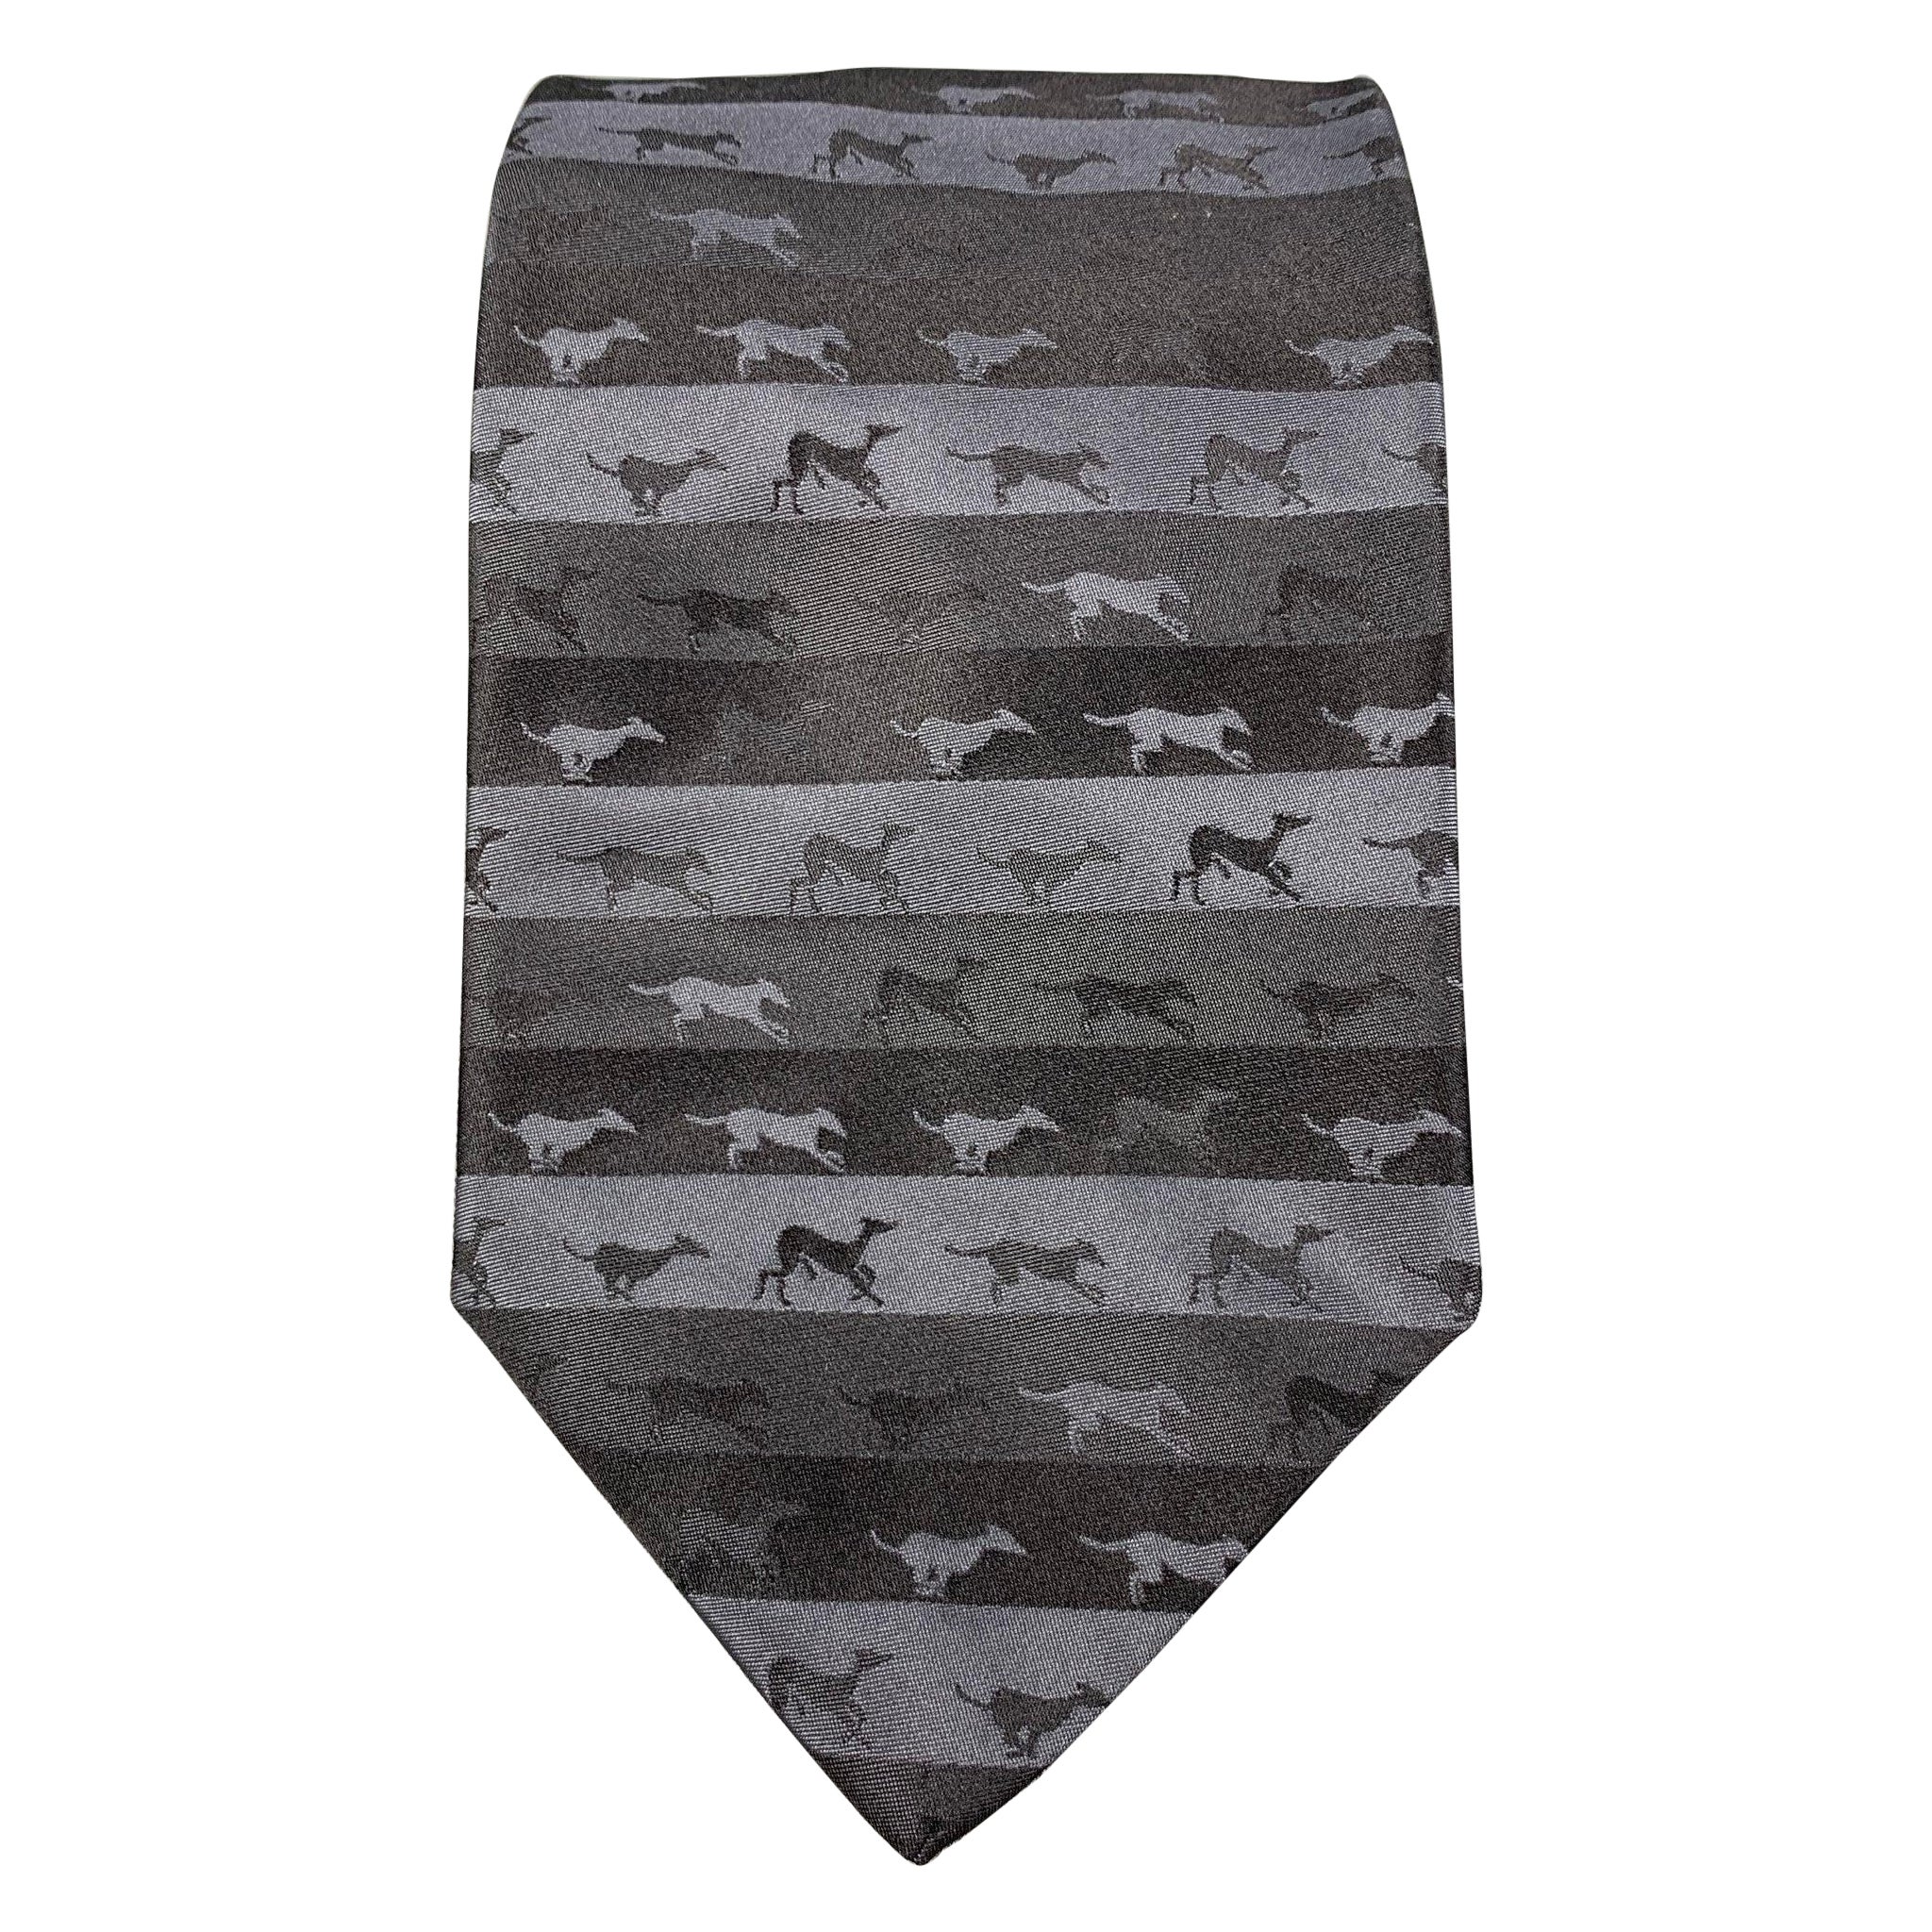 TRUSSARDI Cravate rayée « Dogs » noire et grise en vente